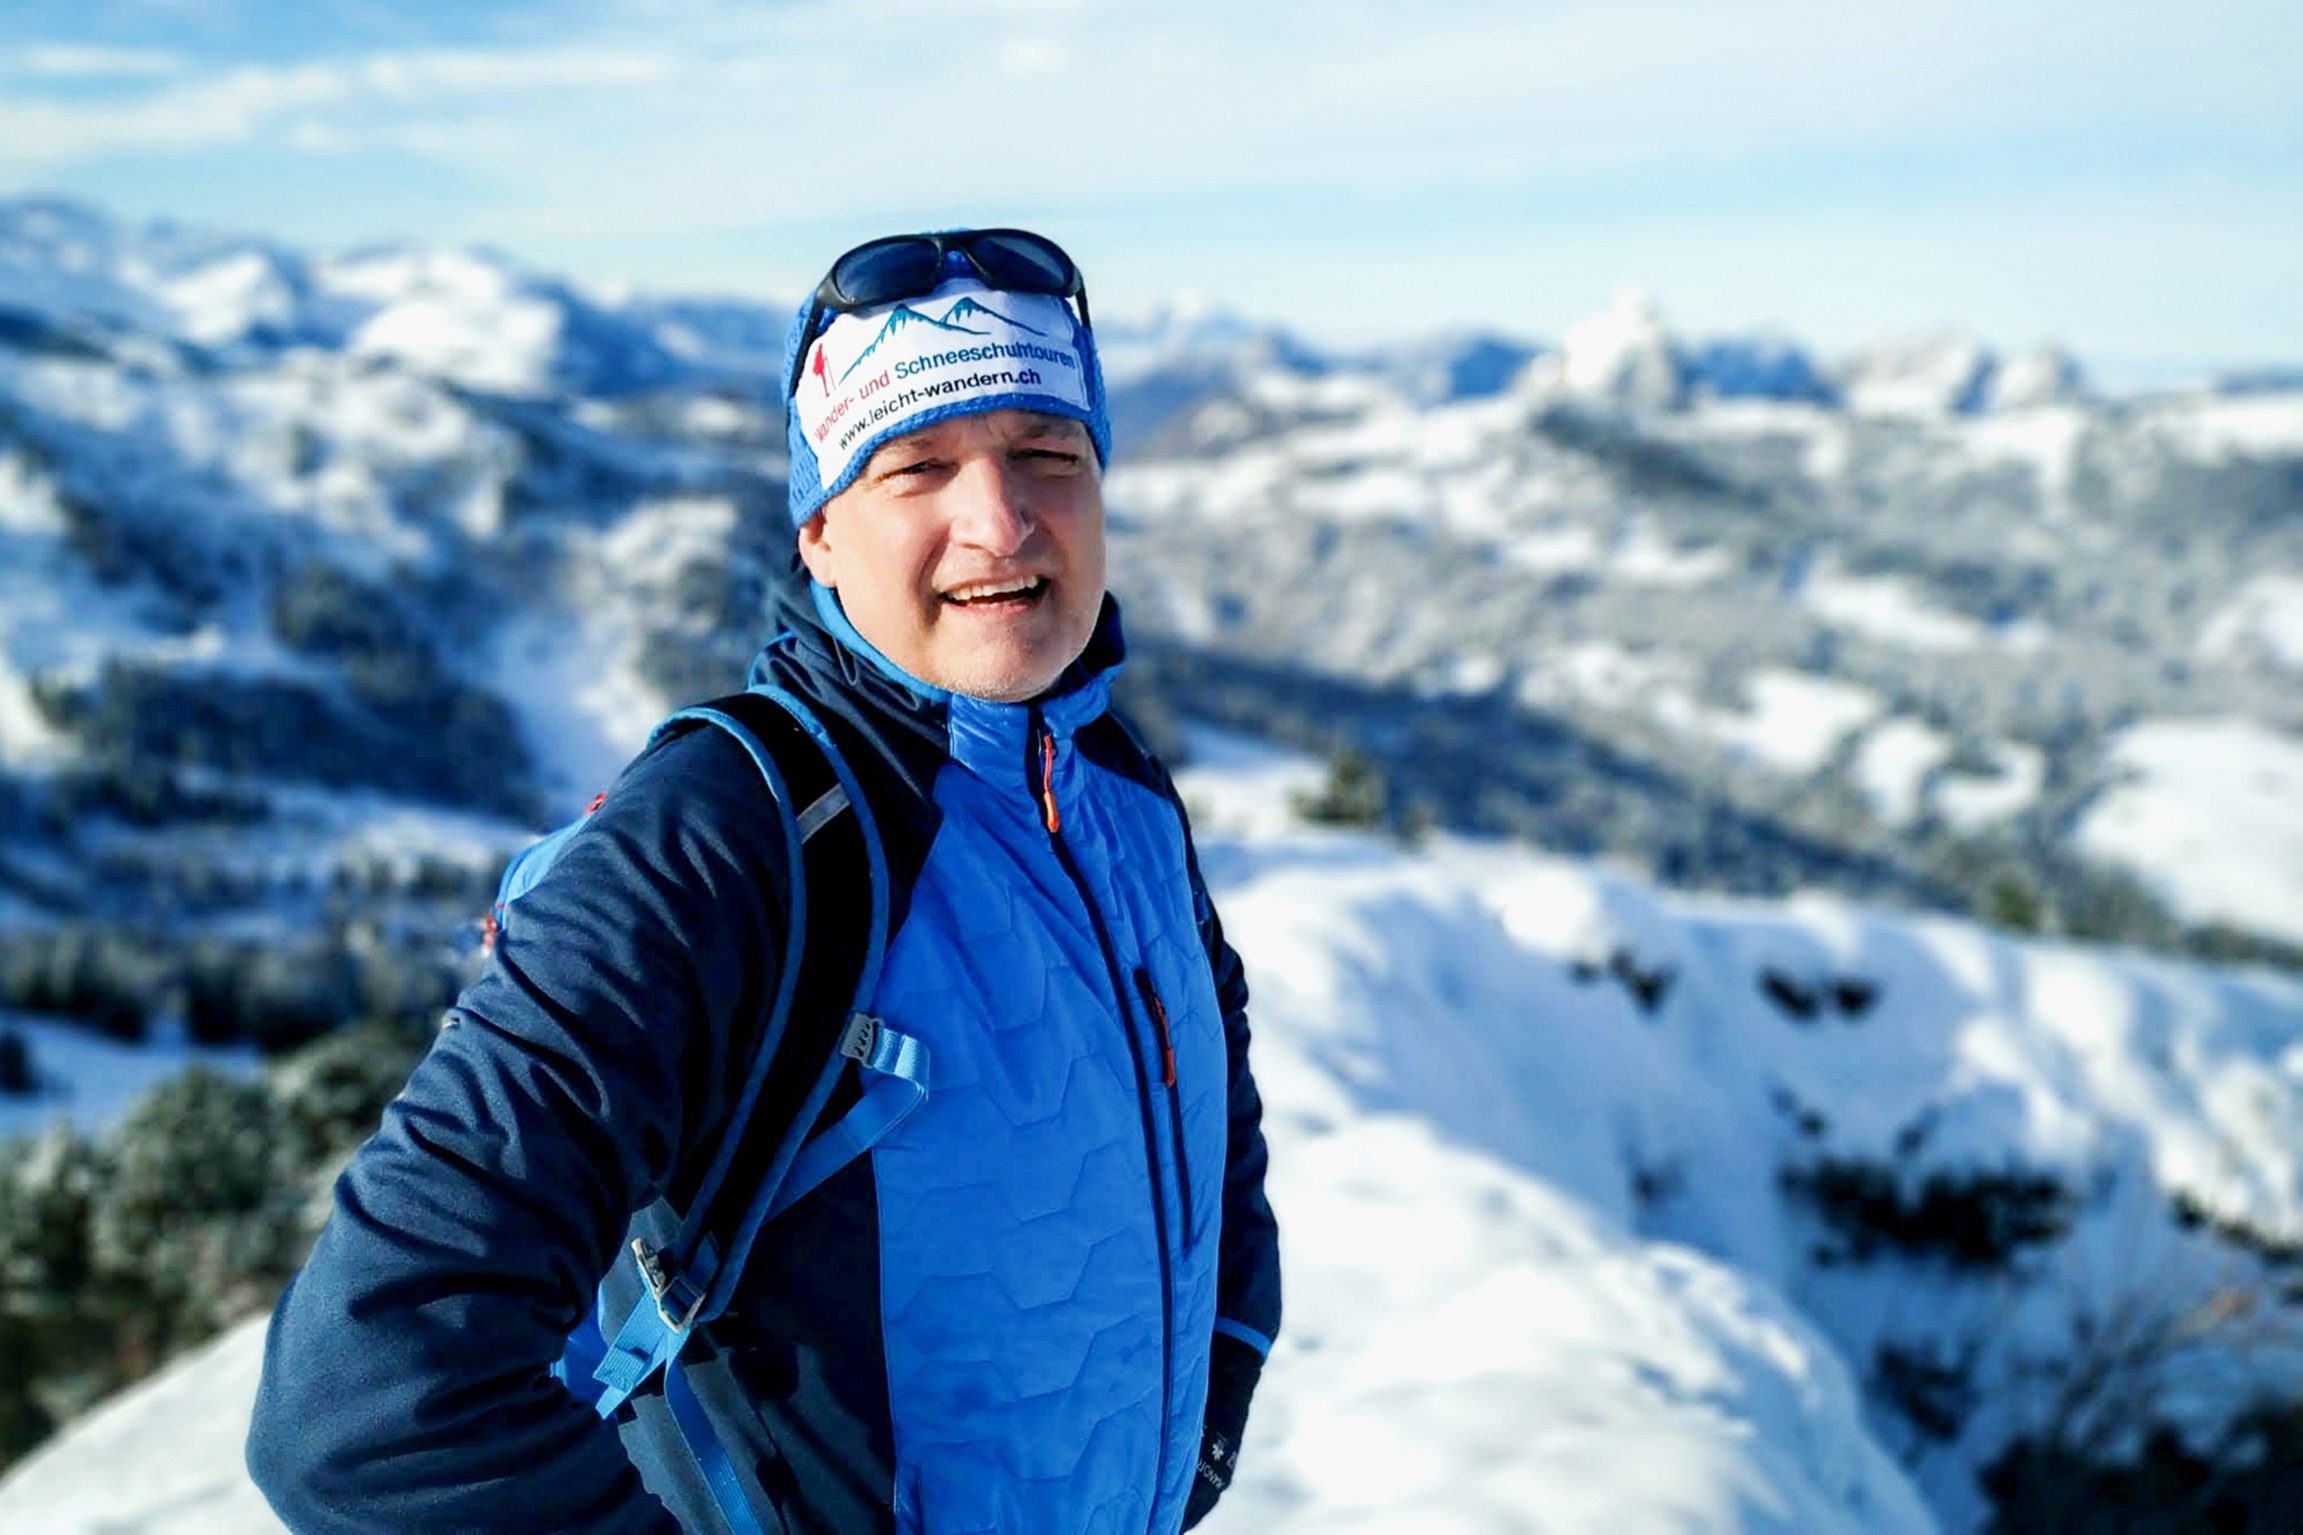 Treffpunkt Radio SRF 1 Eisige Ausflugsziele mit dem Outdoor-Reporter SRF 1 Outdoor-Reporter Marcel Hähni in der eisigen Bergwelt. 2022